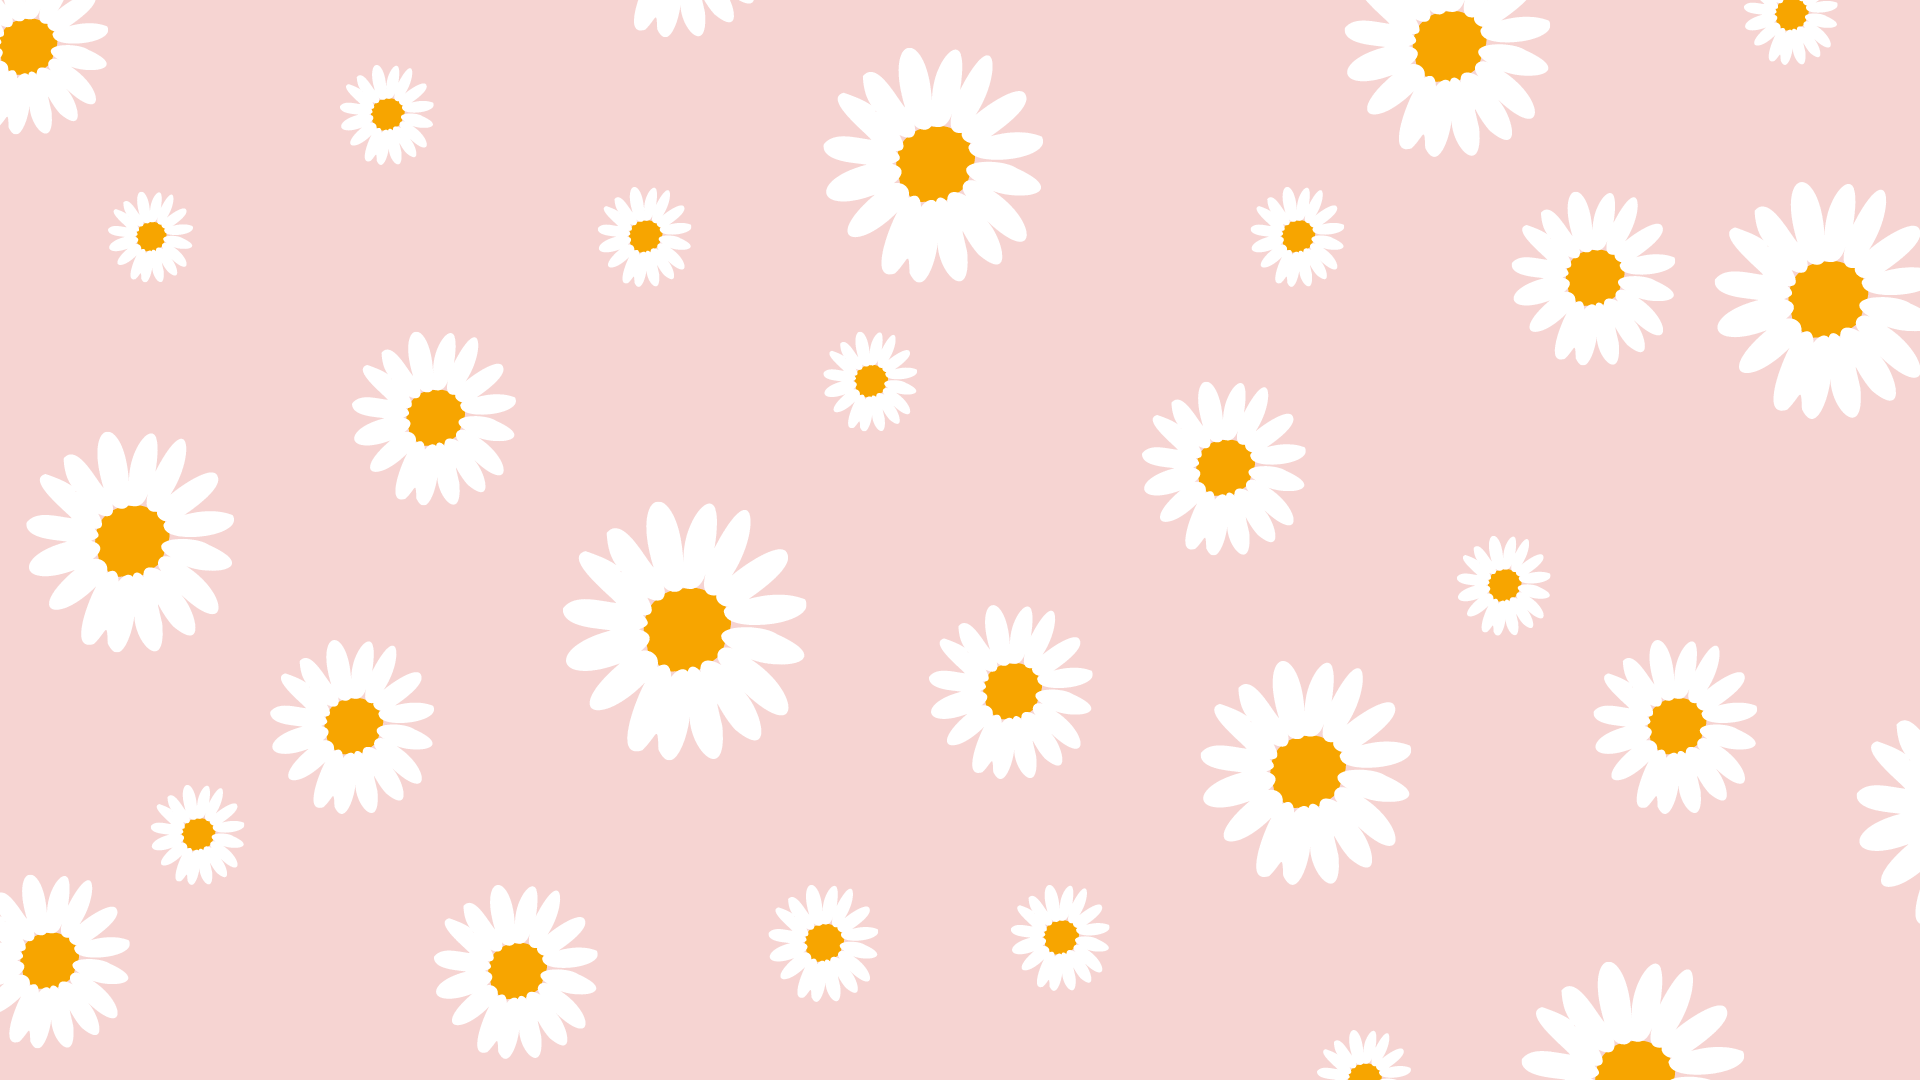 25 FREE Blush Pink Wallpaper for Desktop - Nikki's Plate